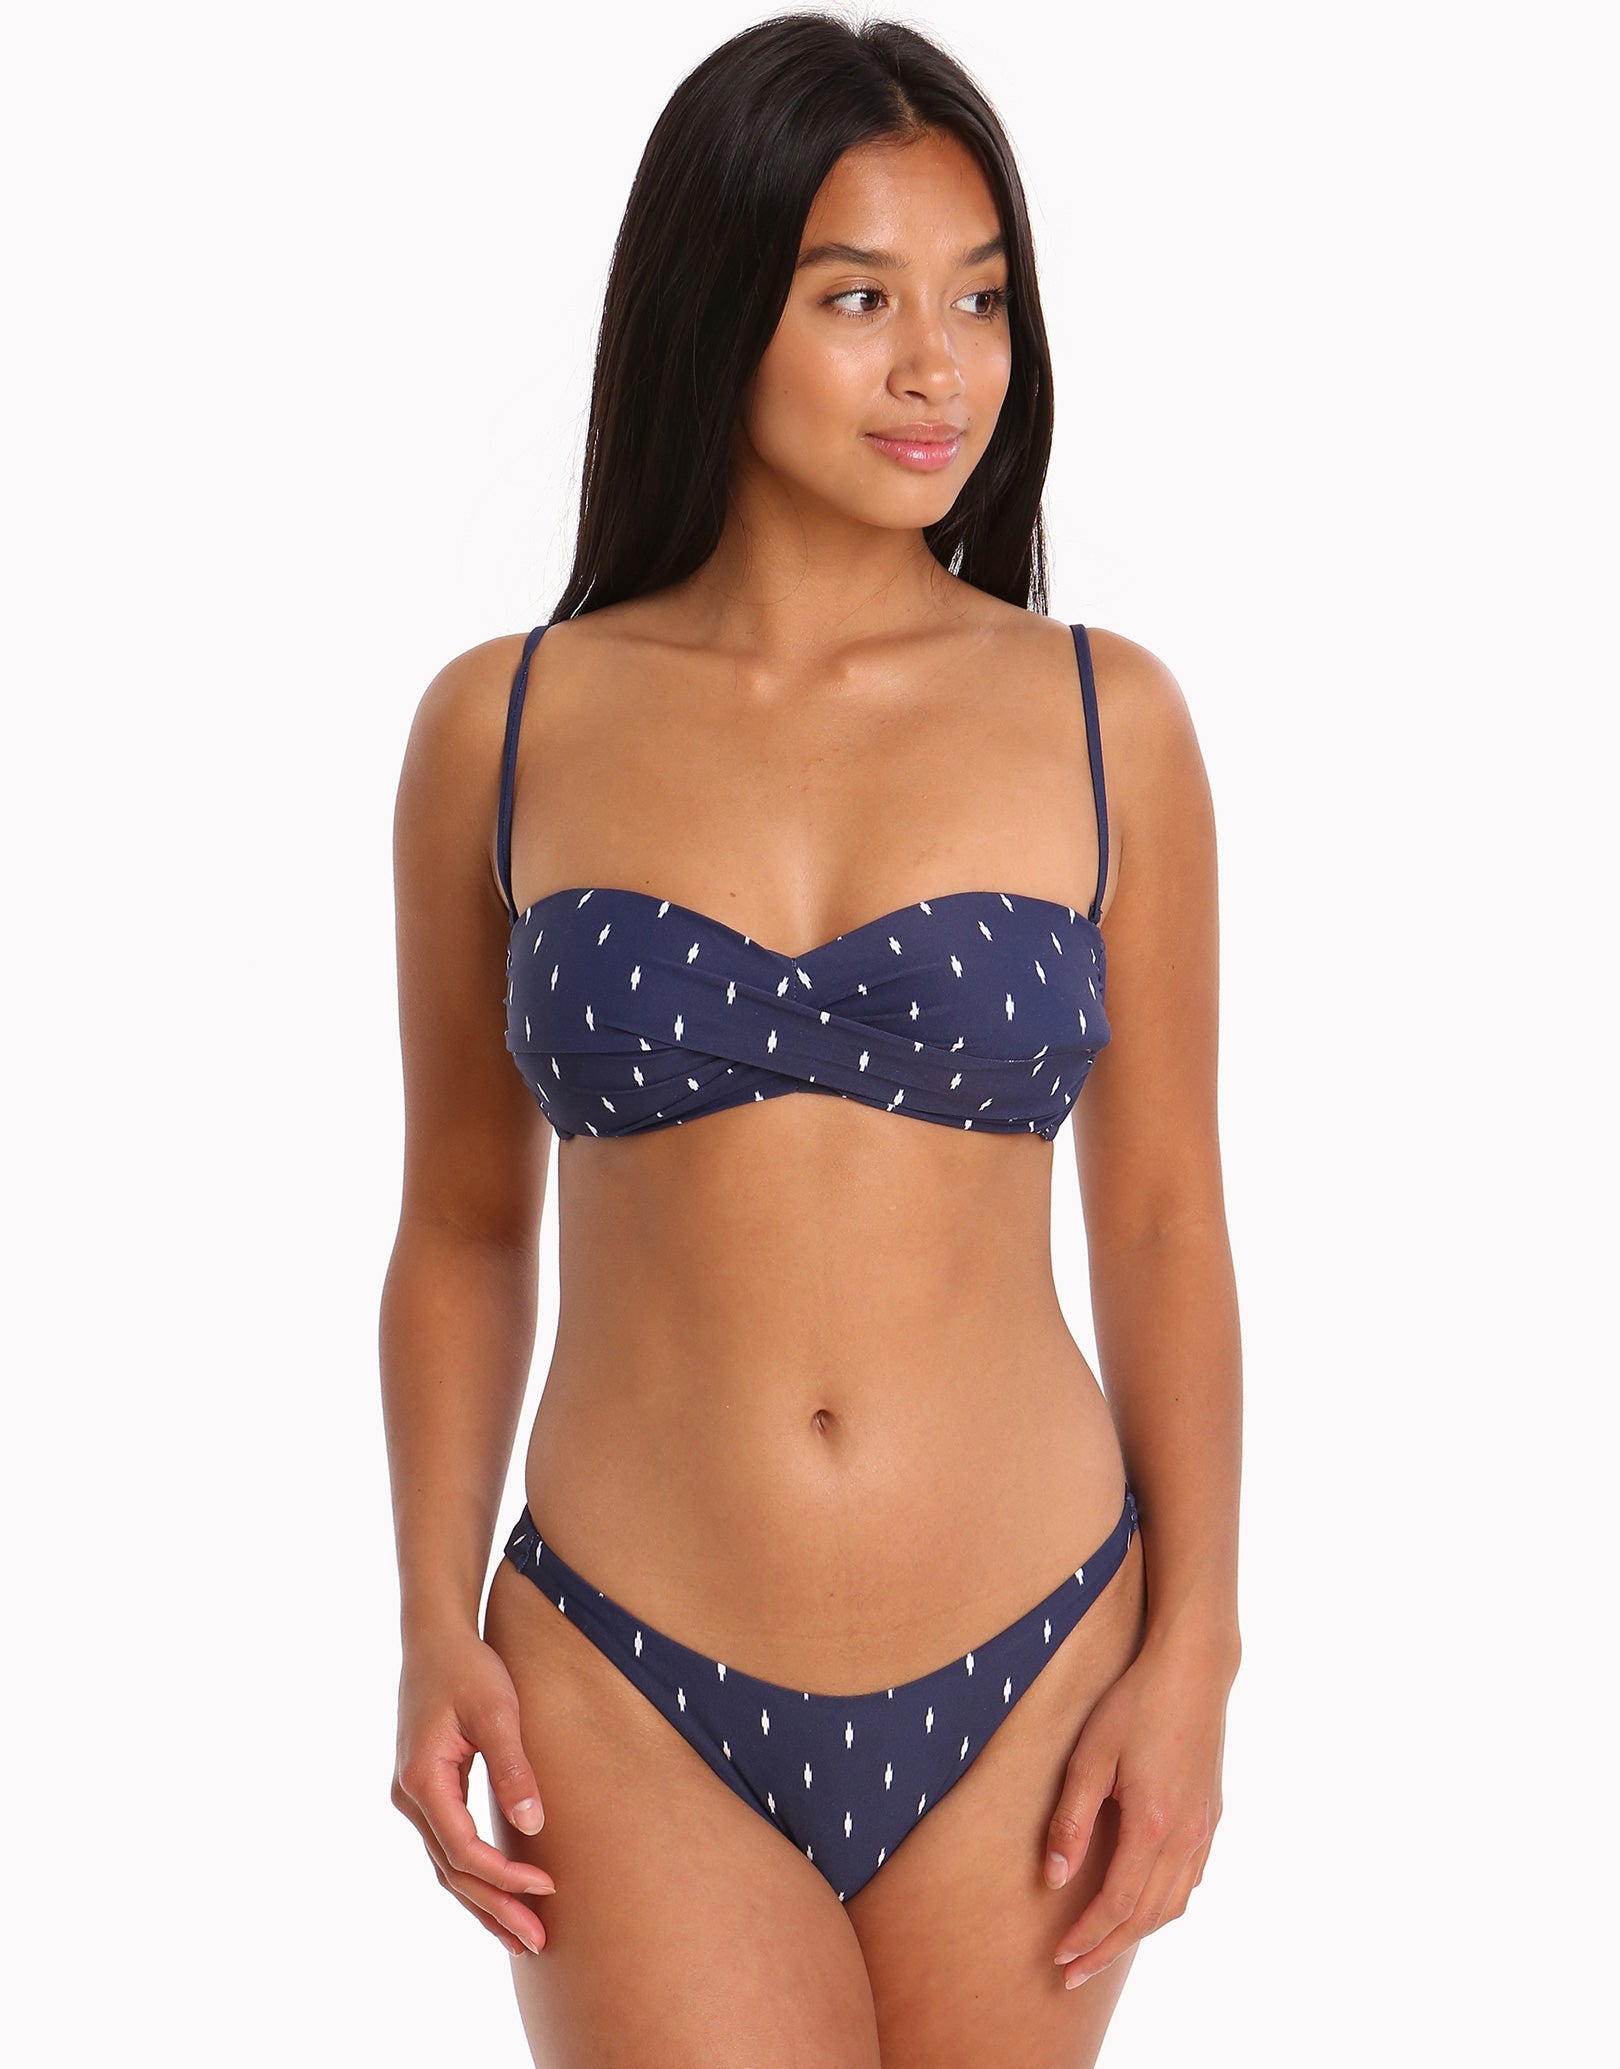 Watercult Artful Dot Bikini Bottom - Indigo